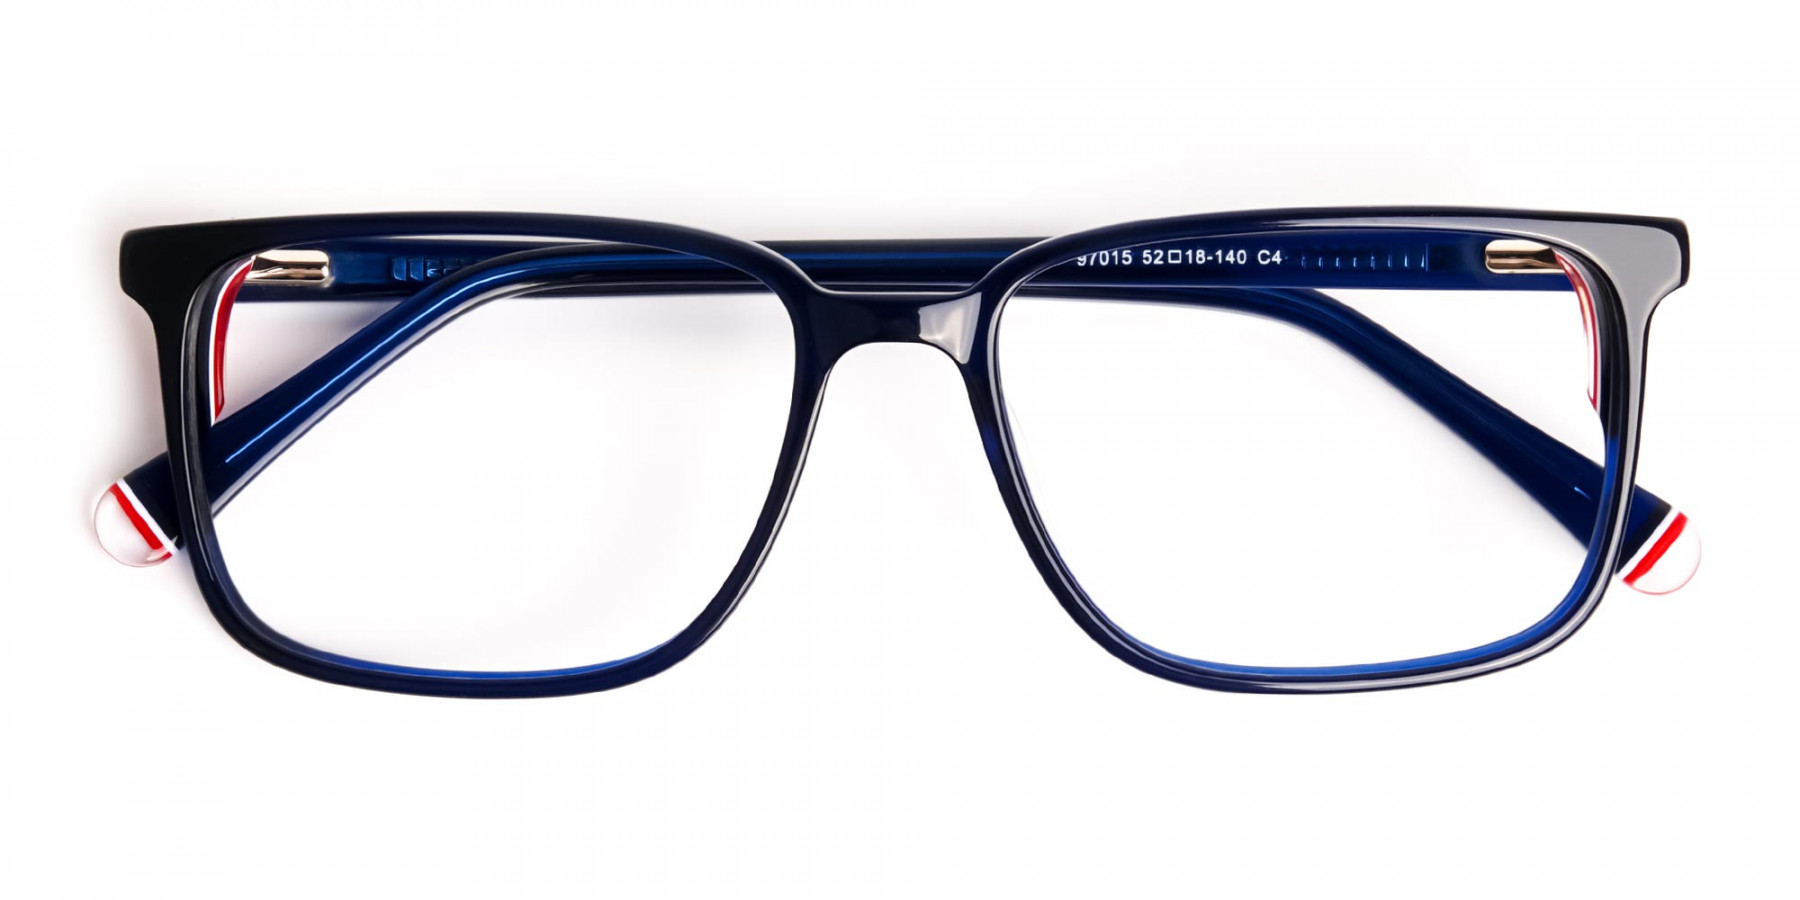 blue-thick-design-rectangular-glasses-frames-1